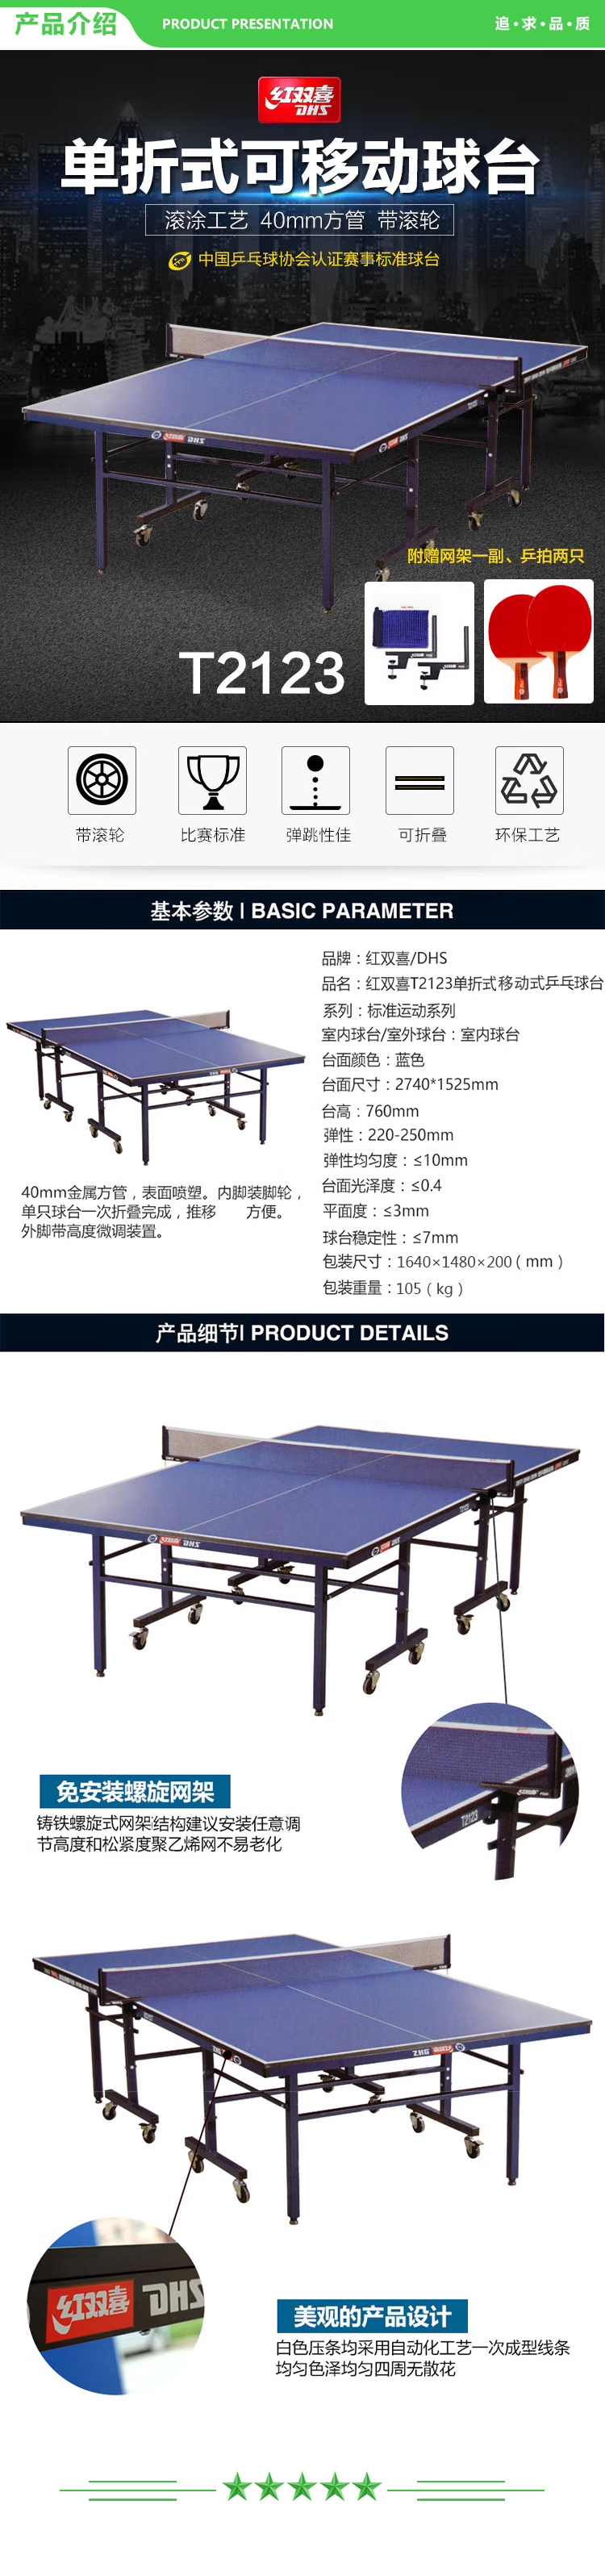 红双喜 DHS T2123 乒乓球桌 单折式标准室内比赛球台(含网架、乒拍两只)  (2).jpg